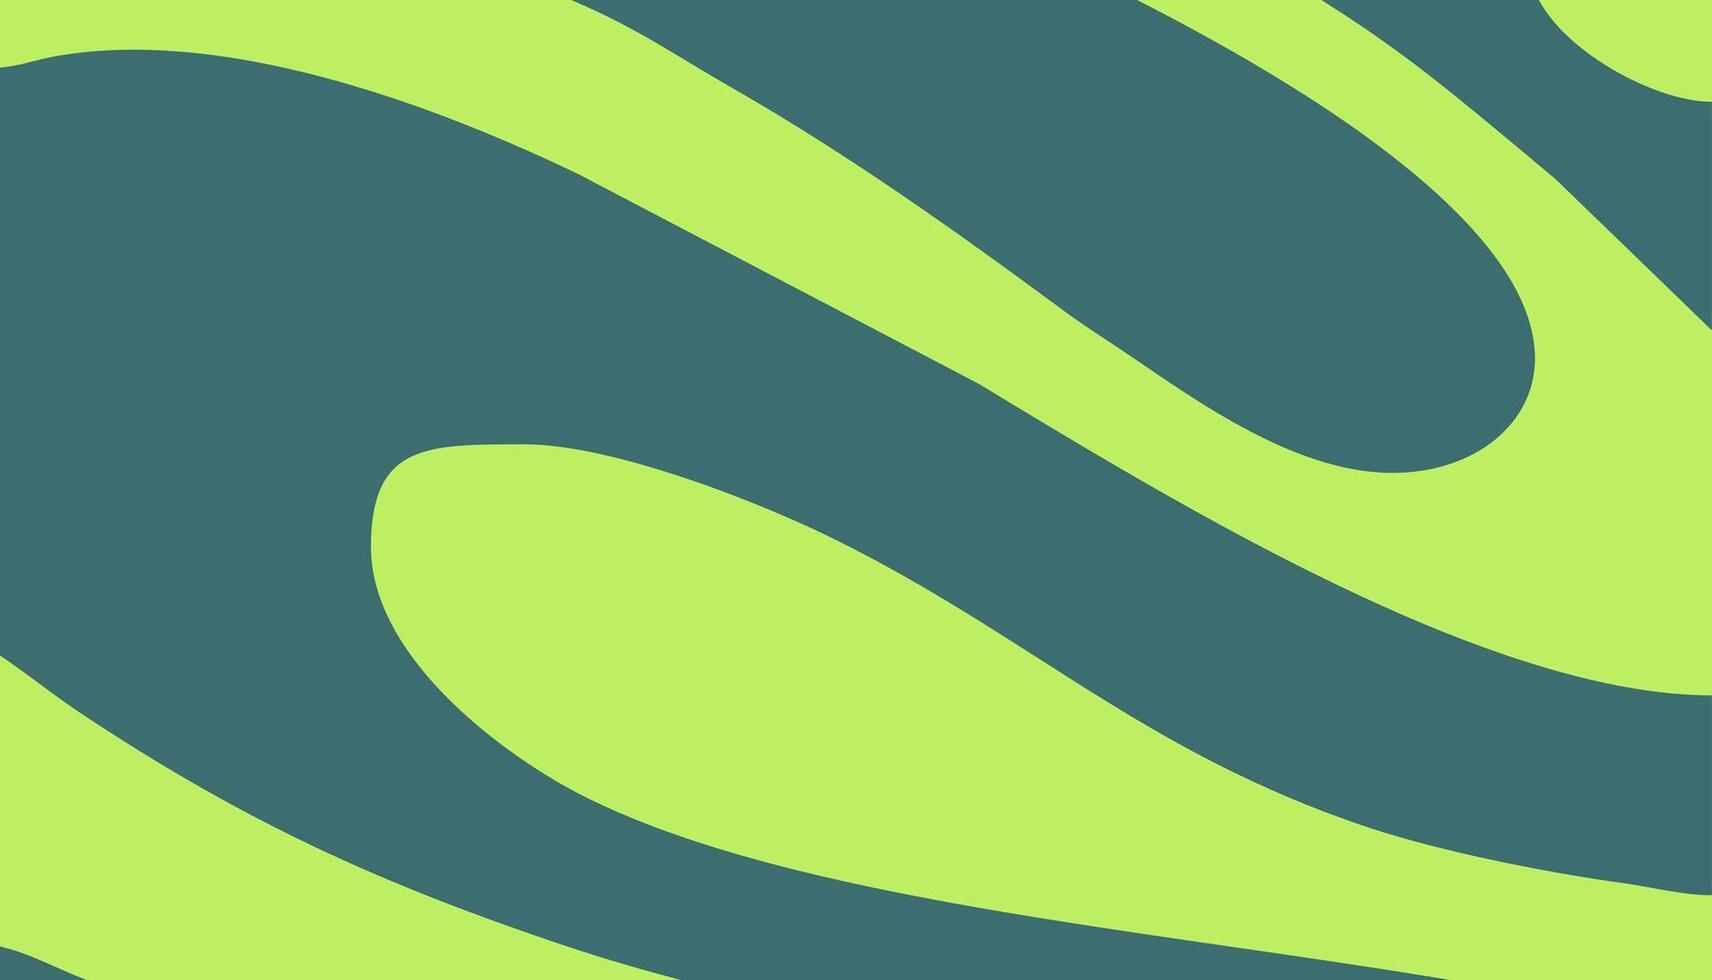 abstrakt Flüssigkeit im dunkel Grün und Licht Grün Pastell- Farben Hintergrund vektor